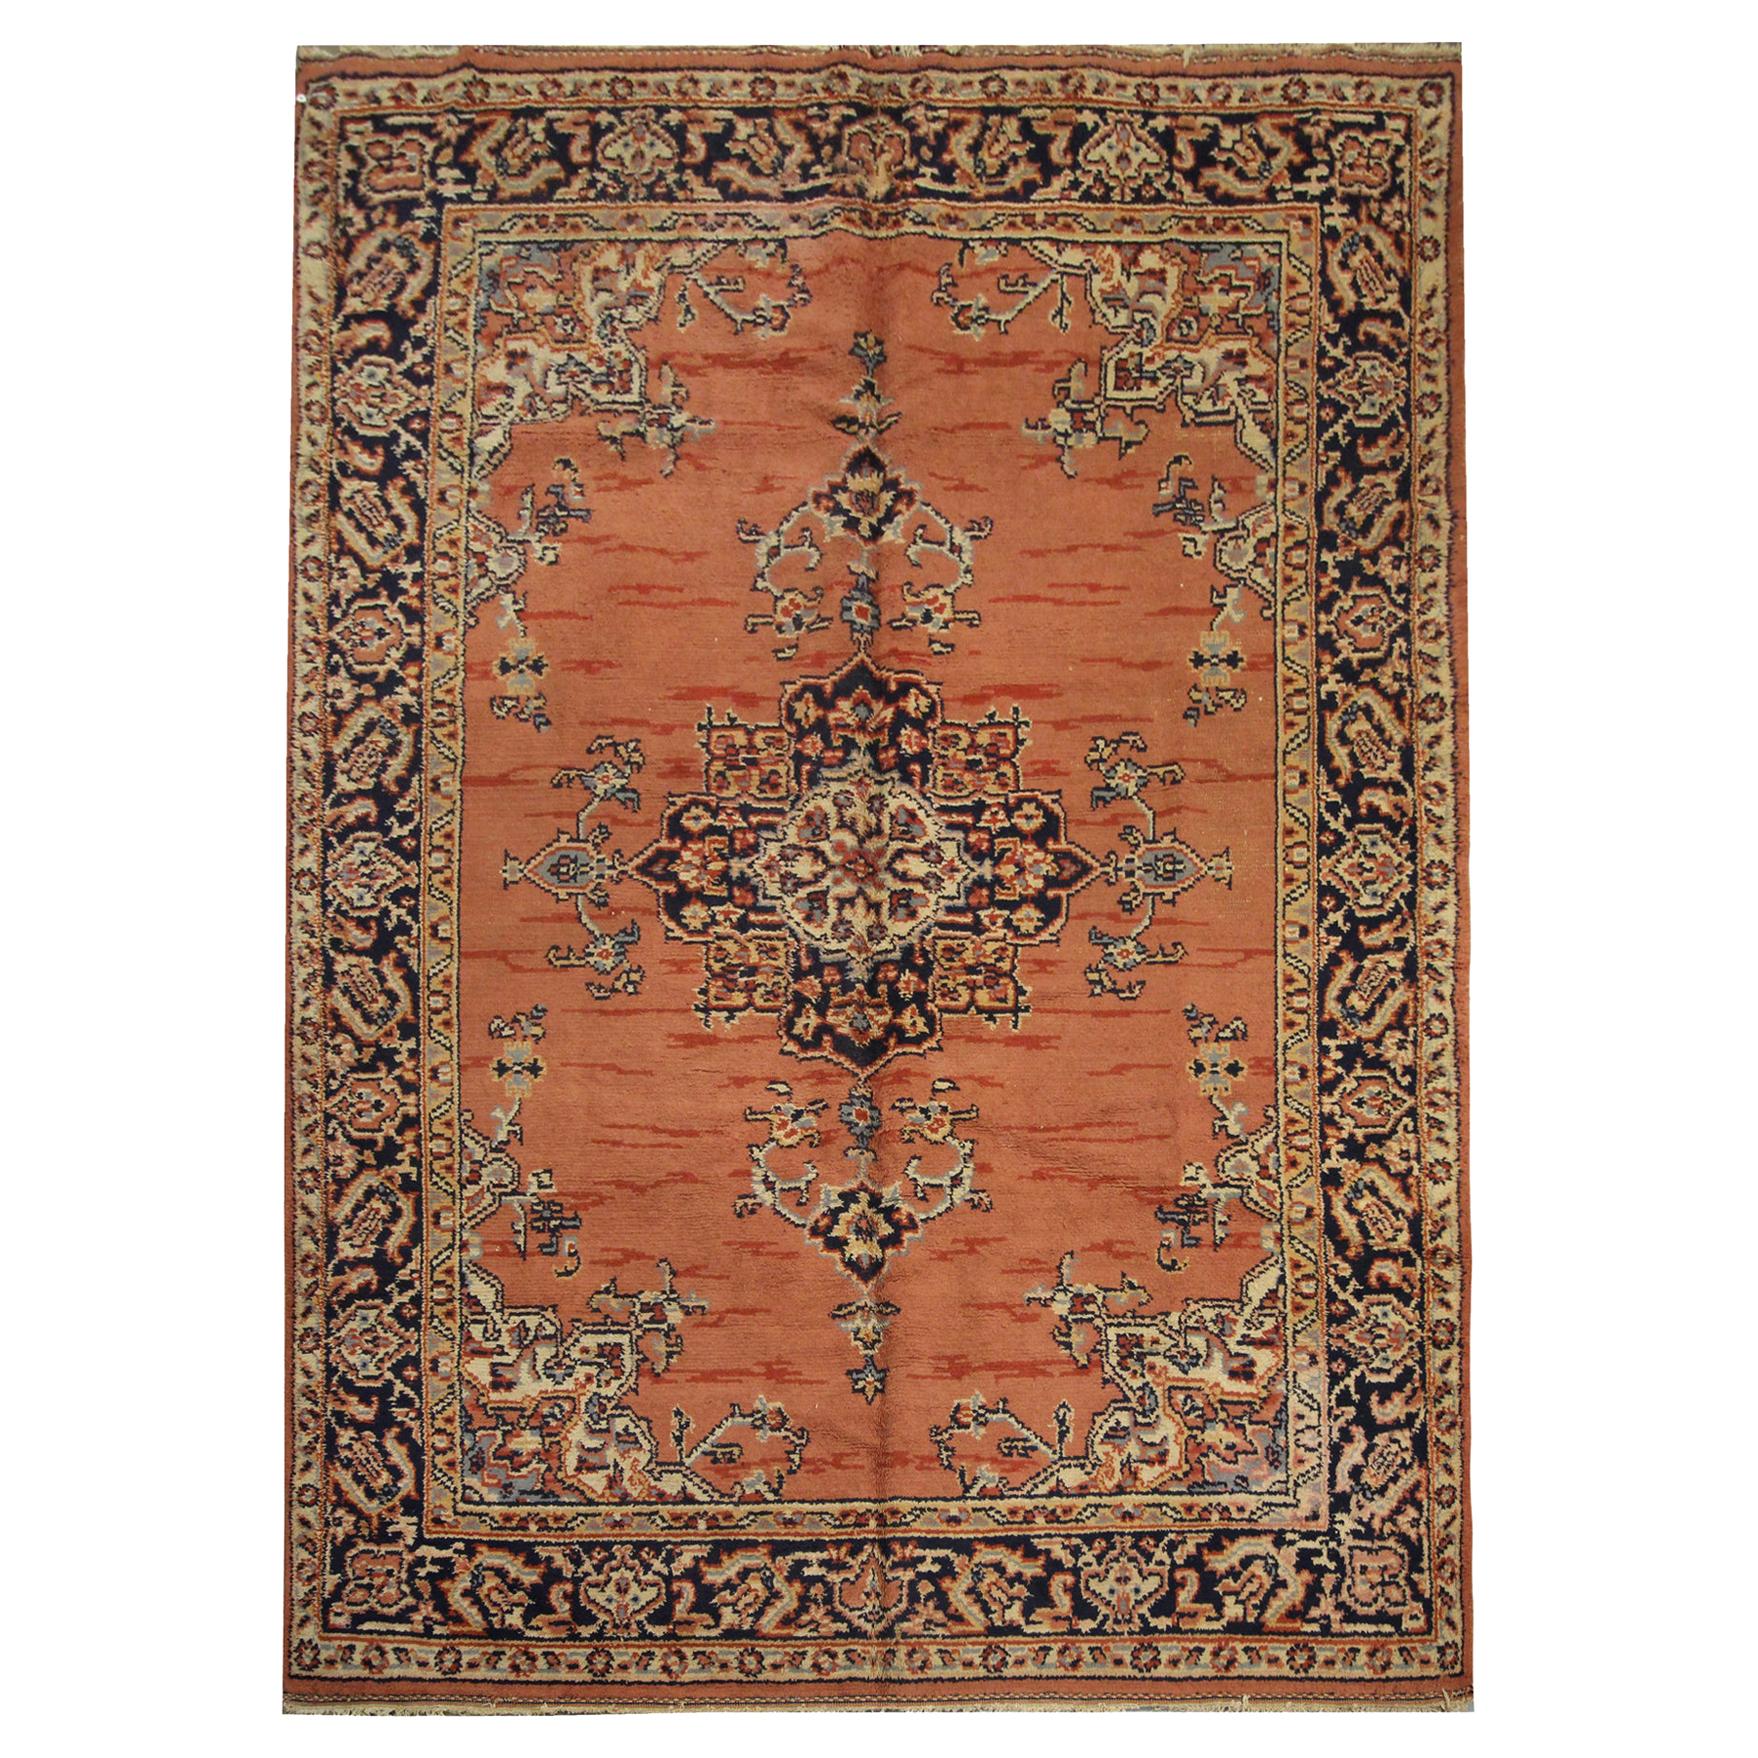 Handgewebter rostfarbener Vintage-Teppich aus indischer Wolle